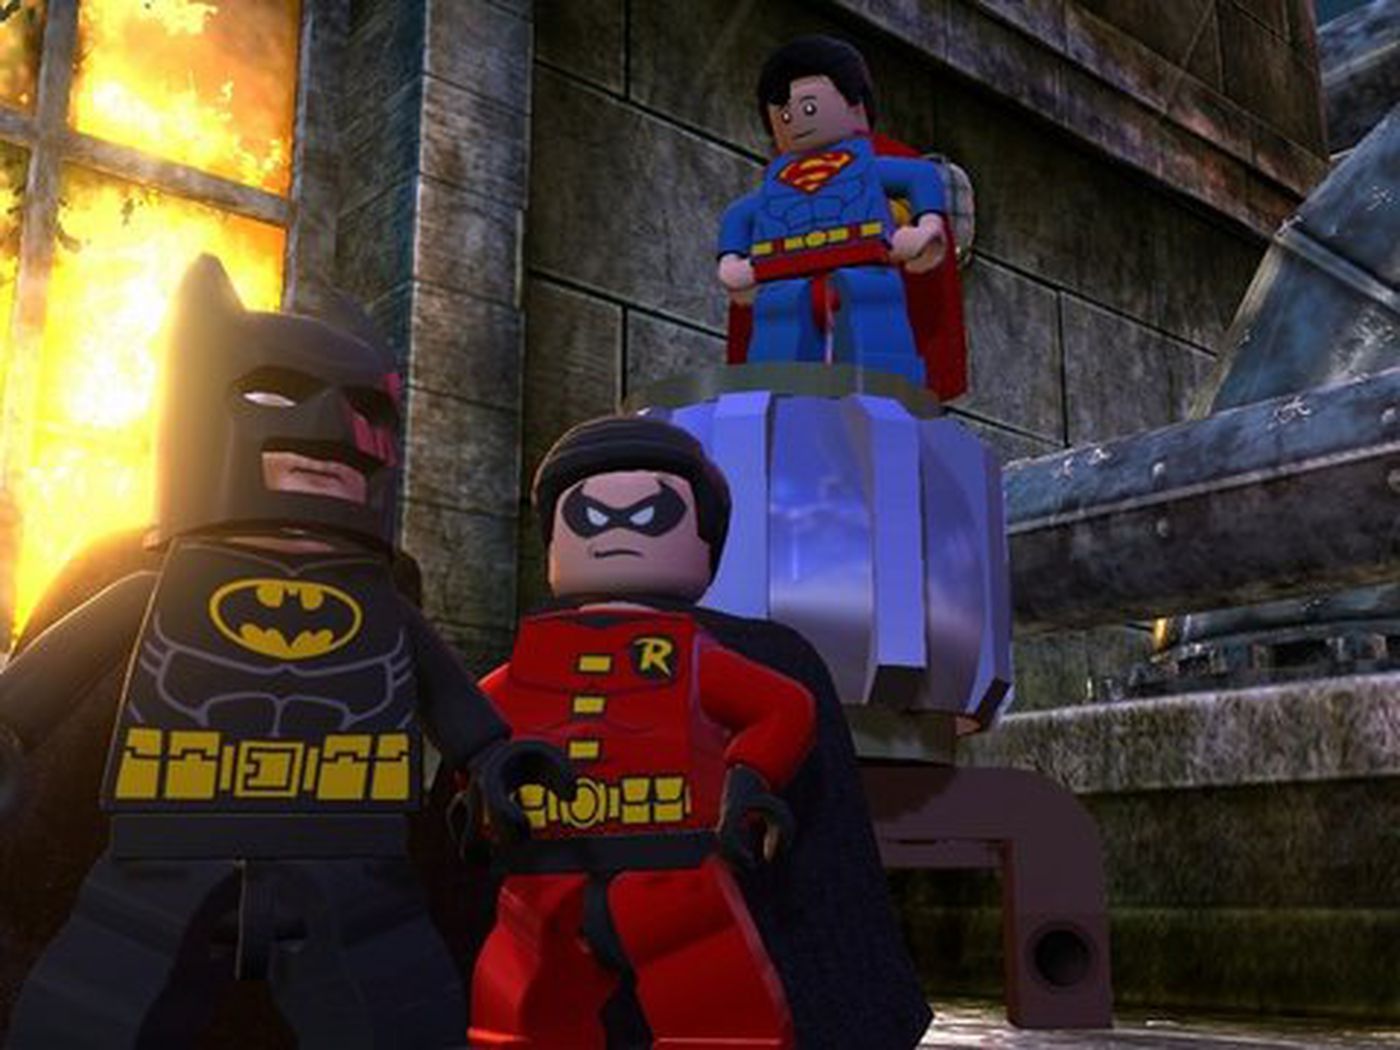 Saca la aseguranza estético Anticuado Lego Batman 2 coming to Wii U this spring - Polygon